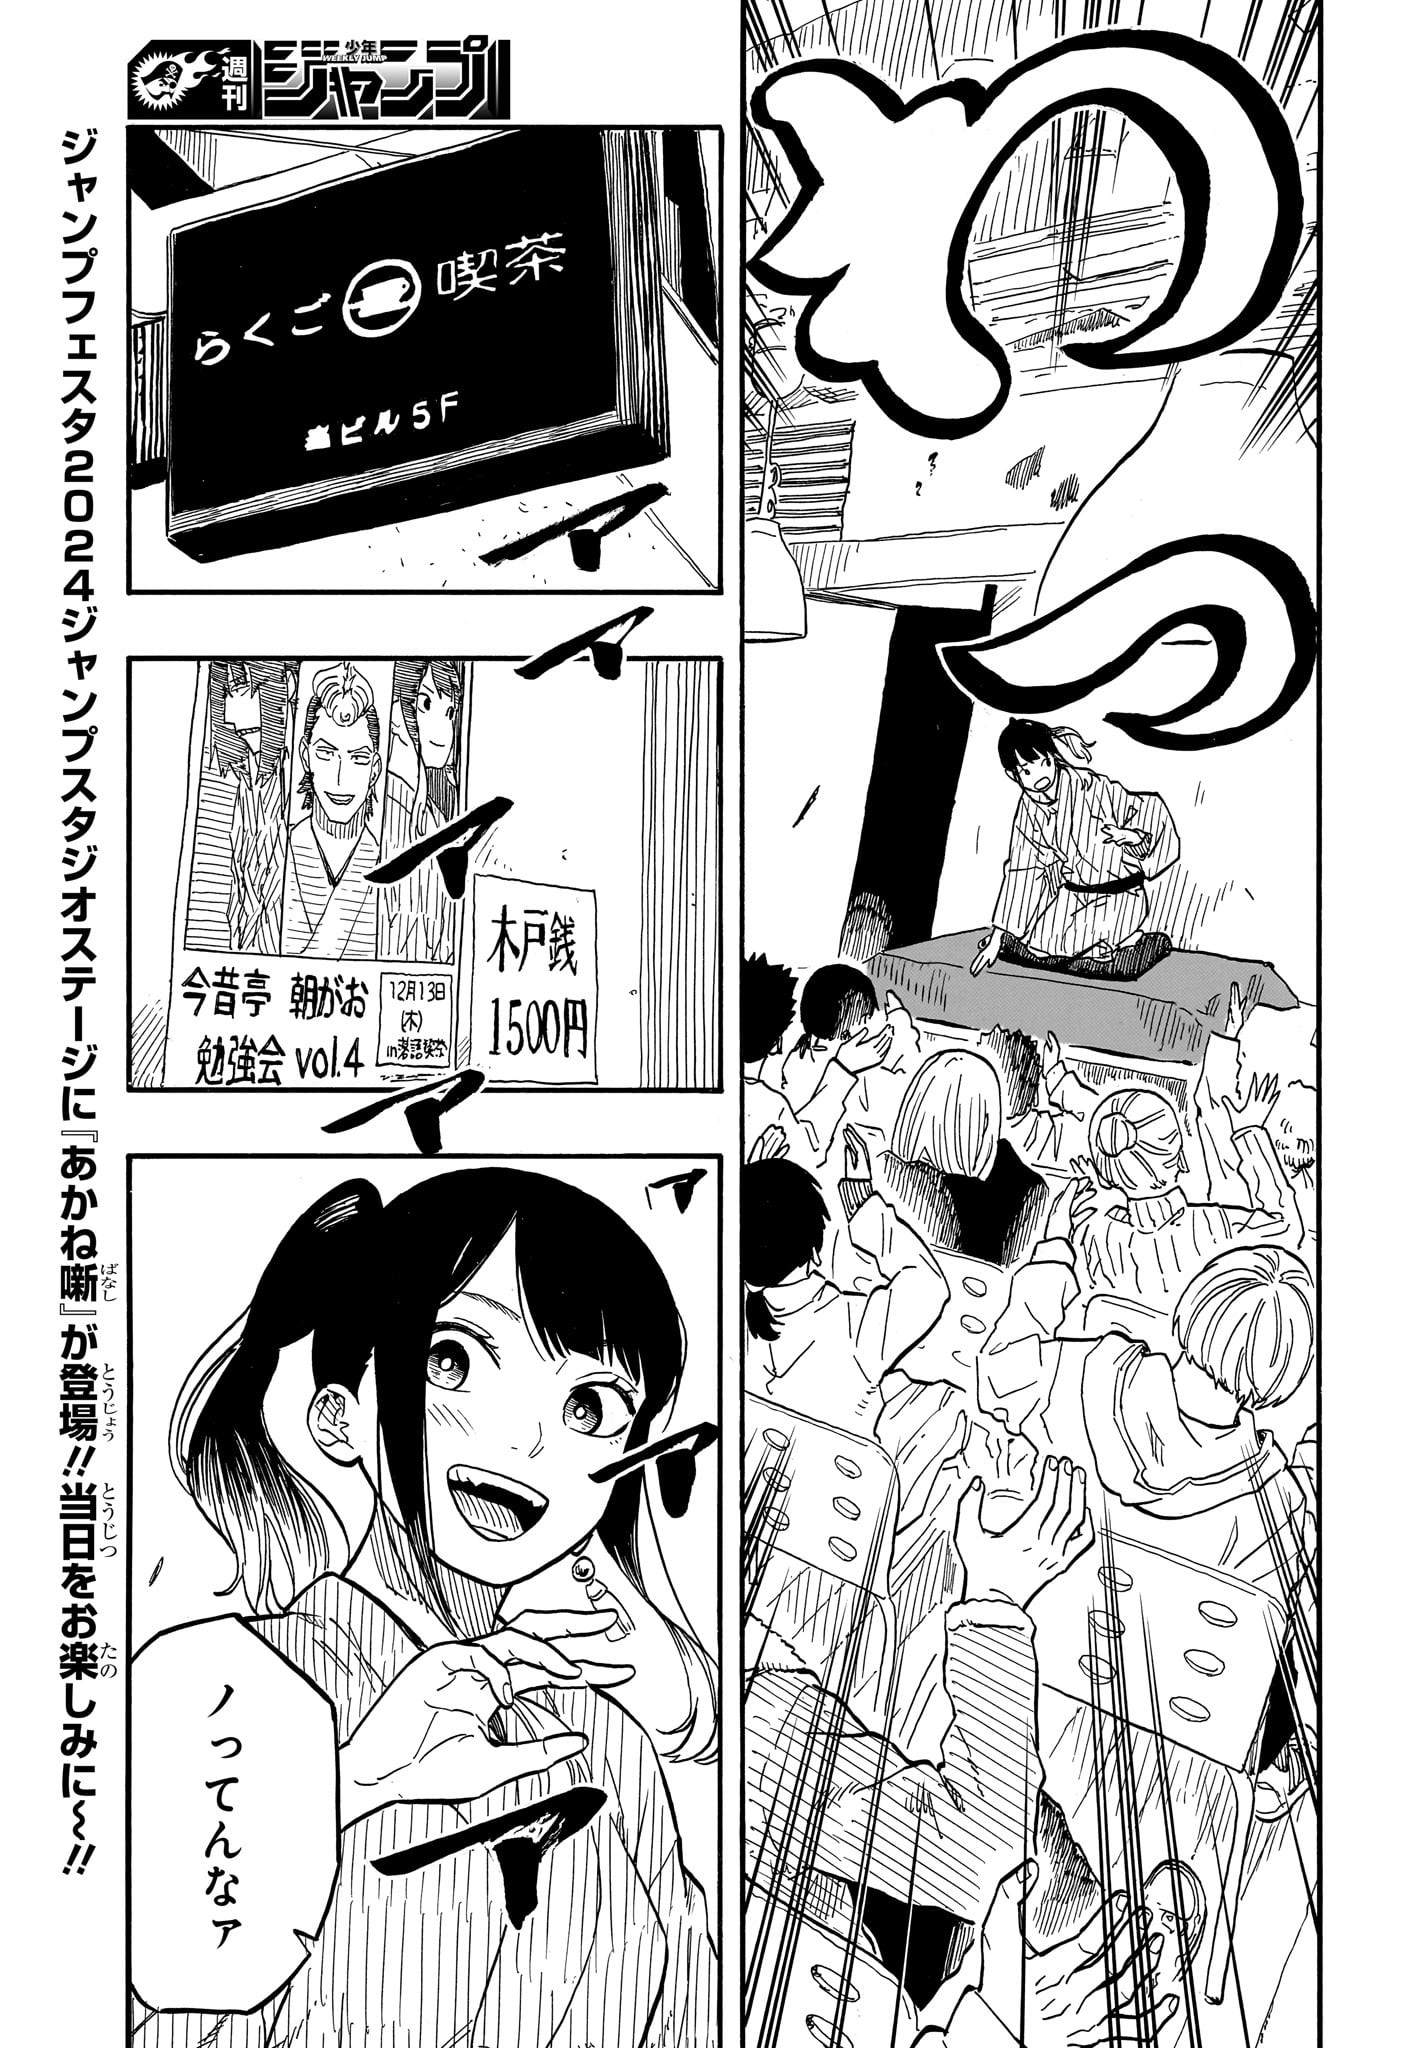 Akane-Banashi - Chapter 90 - Page 3